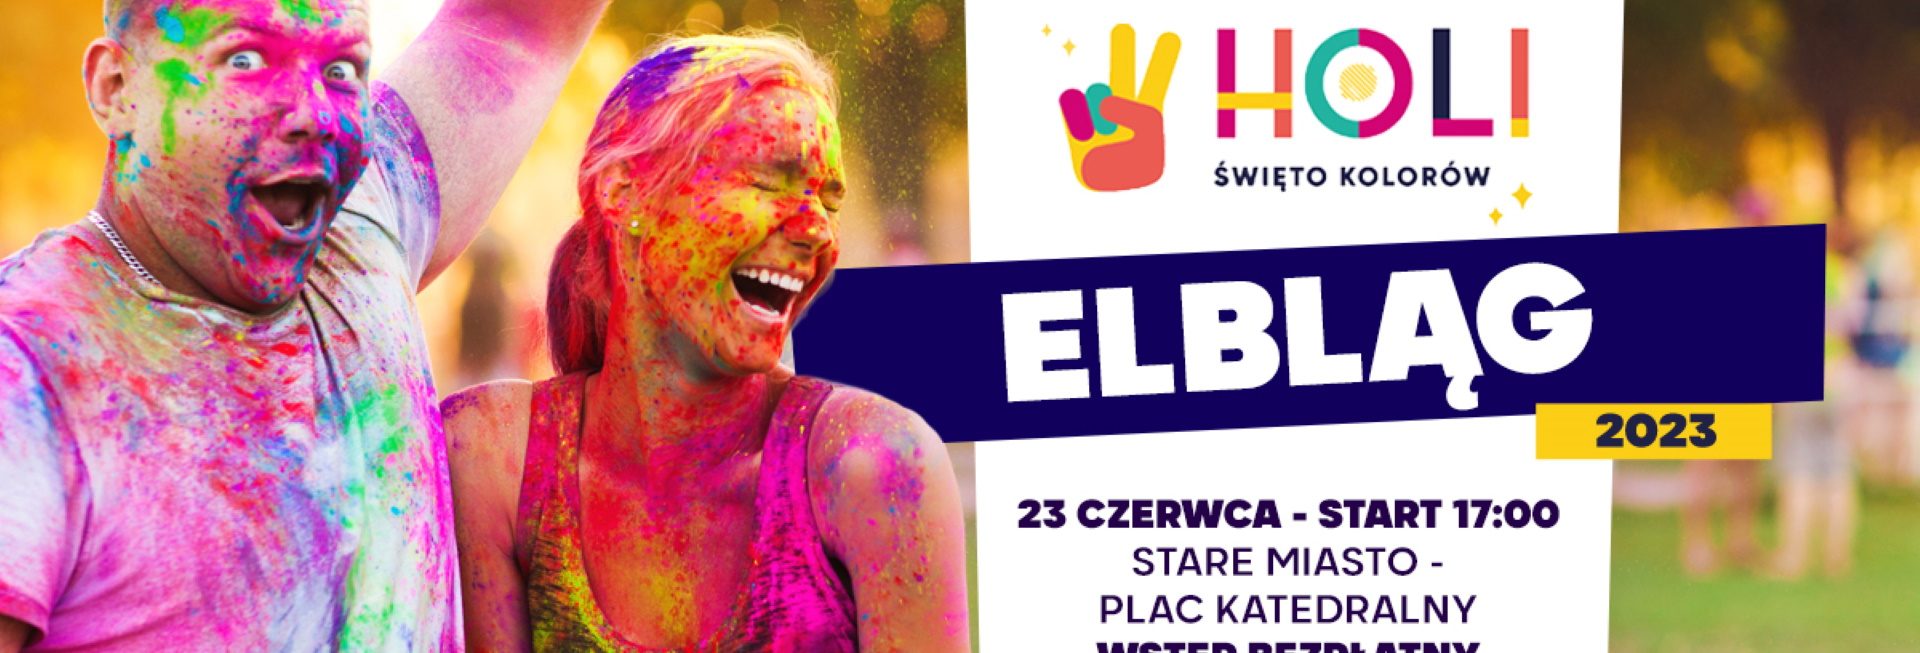 Plakat zapraszający w piątek 23 czerwca 2023 r. do Elbląga Holi Święto Kolorów Elbląg 2023.